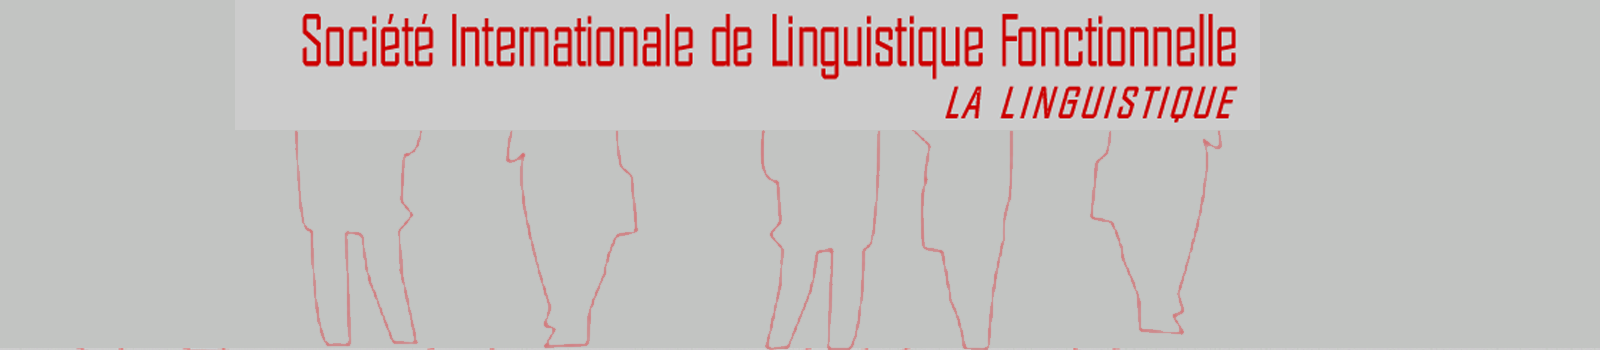 38ème colloque de la Société Internationale de linguistique fonctionnelle